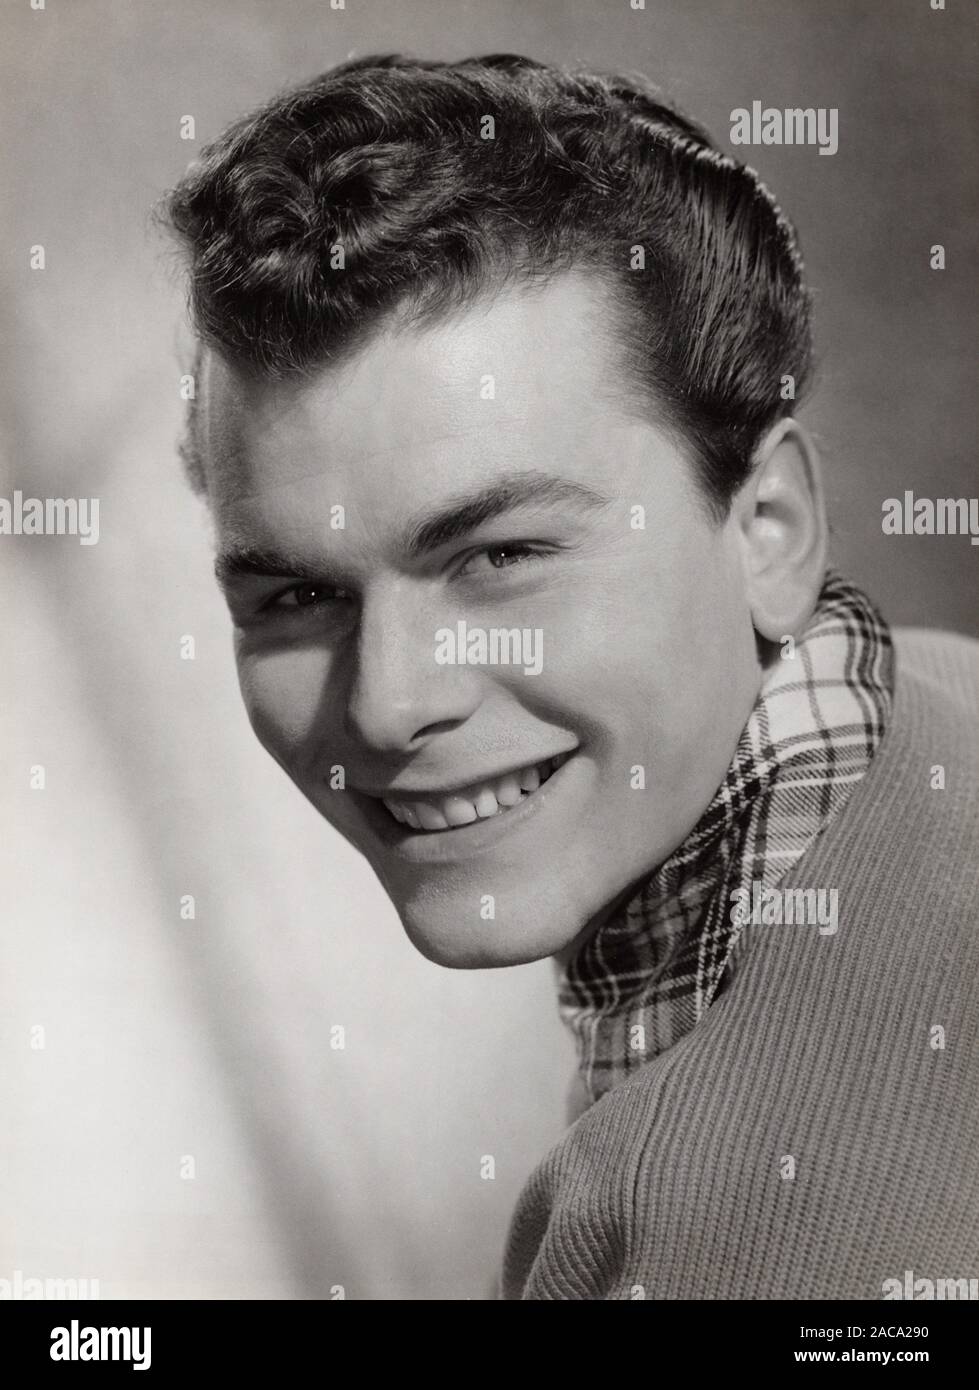 Lutz Moik, deutscher Schauspieler und Synchronsprecher, Deutschland um 1955. German actor and dubbing actor Lutz Moik, Germany around 1955. Stock Photo